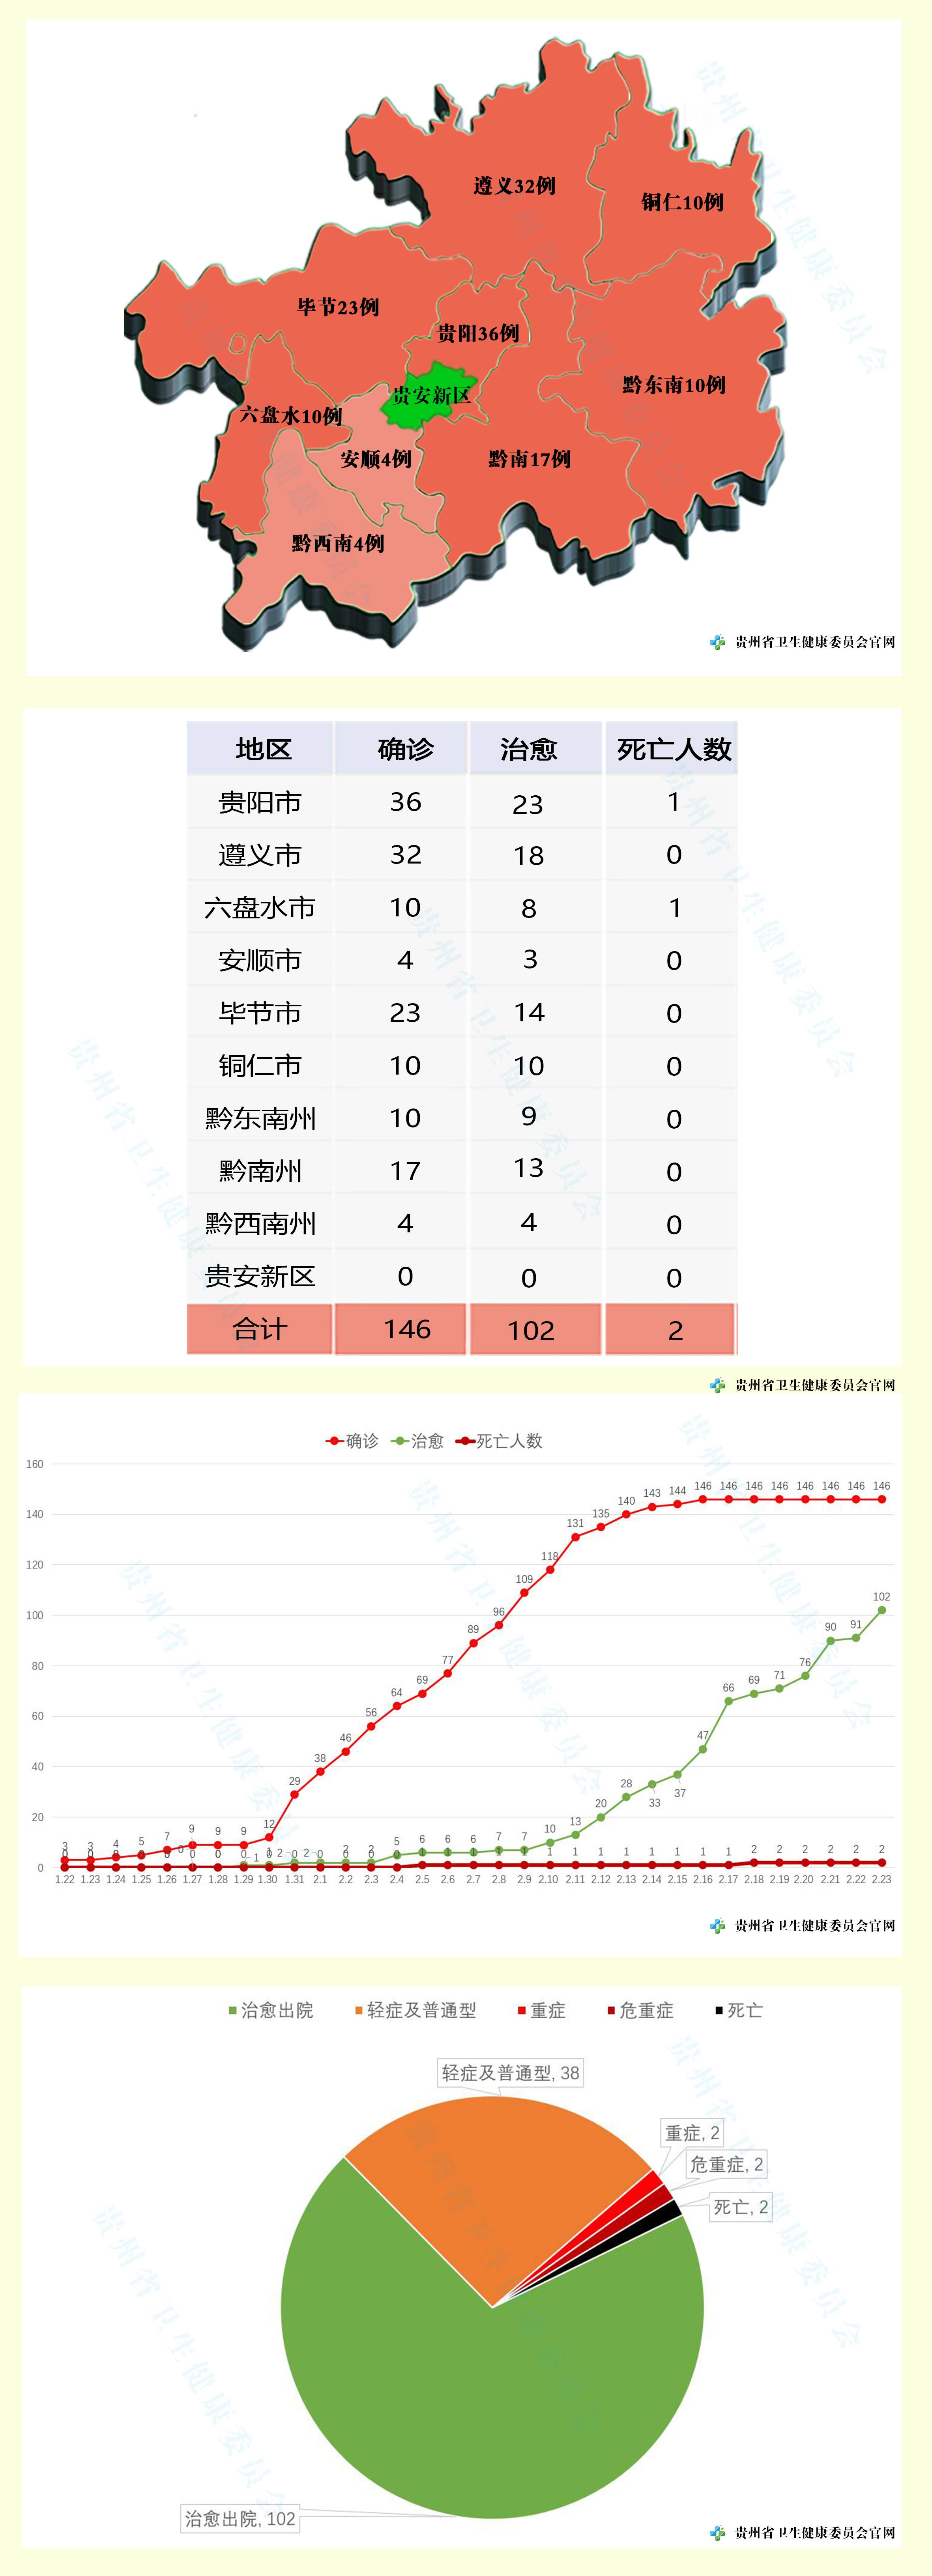 2020年2月23日12—24时贵州省新型冠状病毒肺炎疫情情况